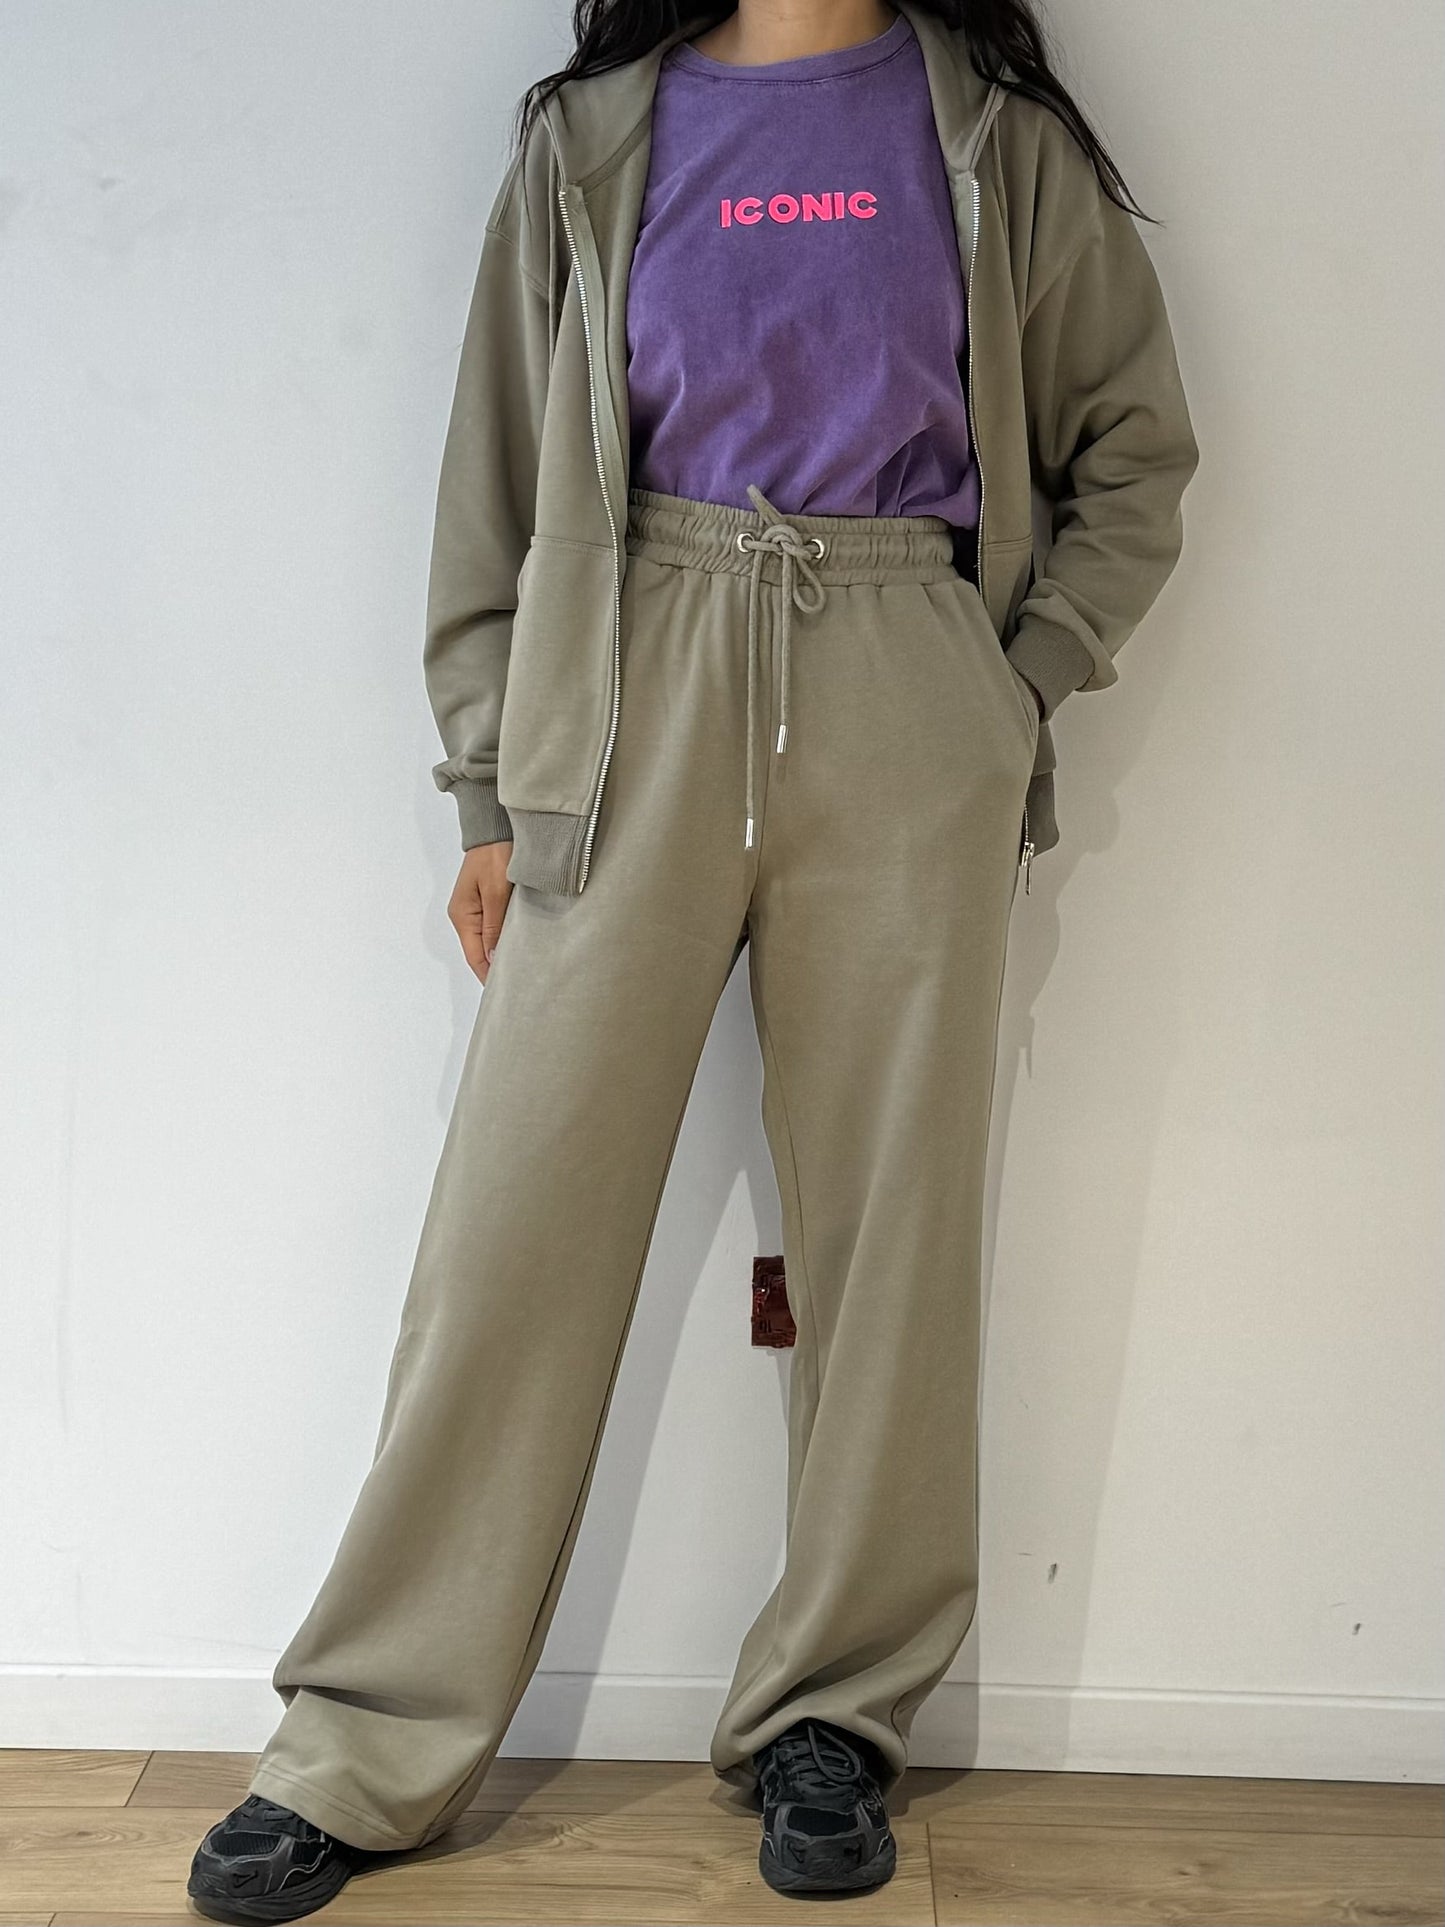 Tenue complète avec sweat à capuche zippé gris et pantalon assorti pour femme